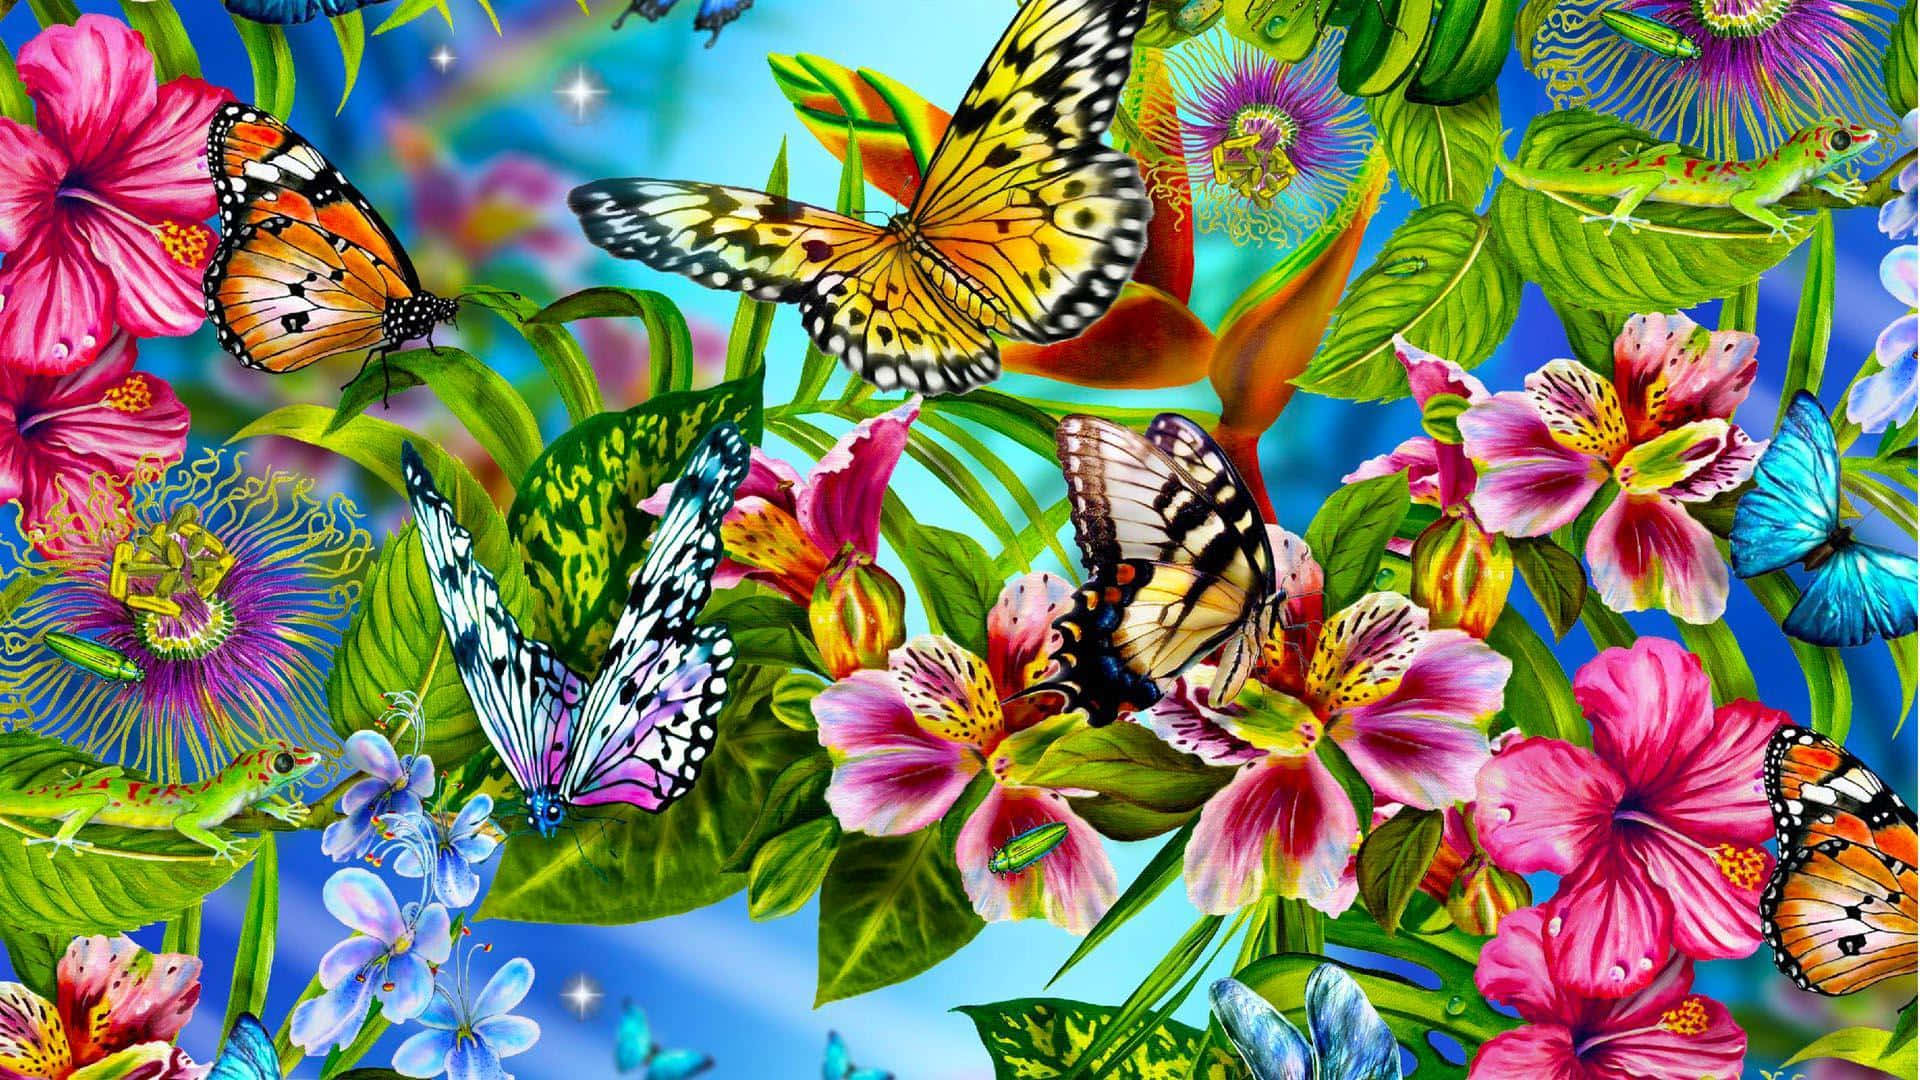 A Beautiful Group of Butterflies